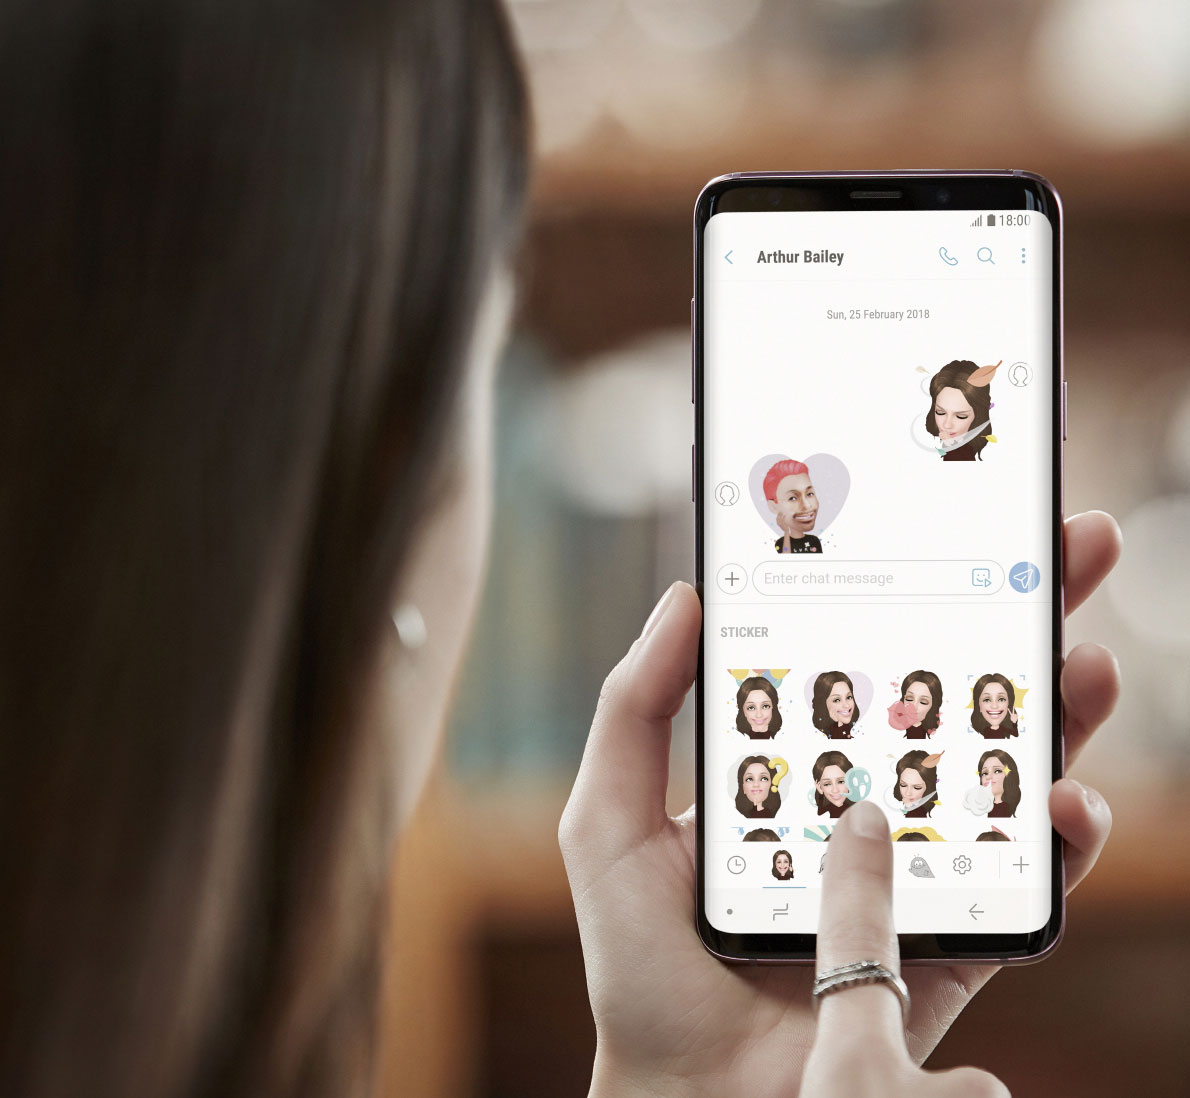 Samsung lanza el nuevo Galaxy S9 con emojis humanos animados